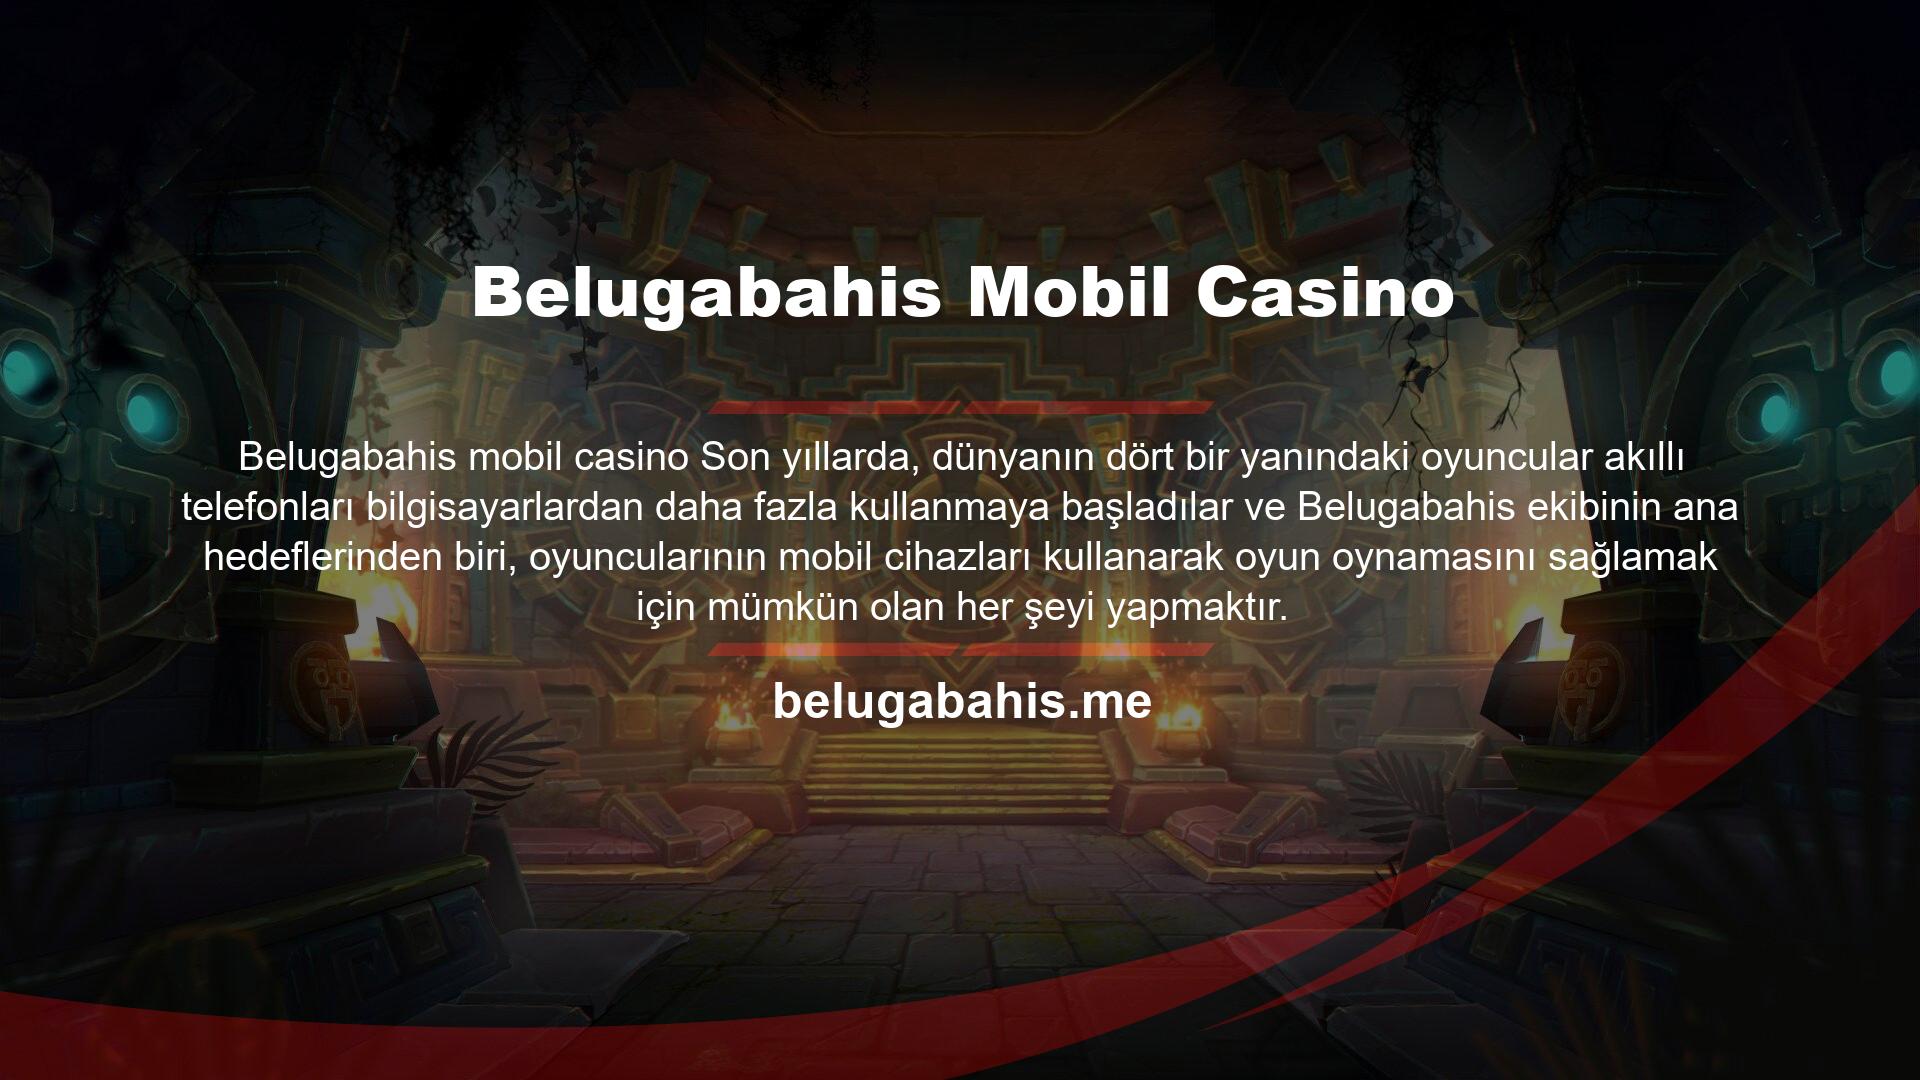 Artık Belugabahis Casino hakkında her şeyi öğrendiğinize göre, mobil cihazınızı kullanarak bahisçinin casinonda oynamaya devam edebilirsiniz